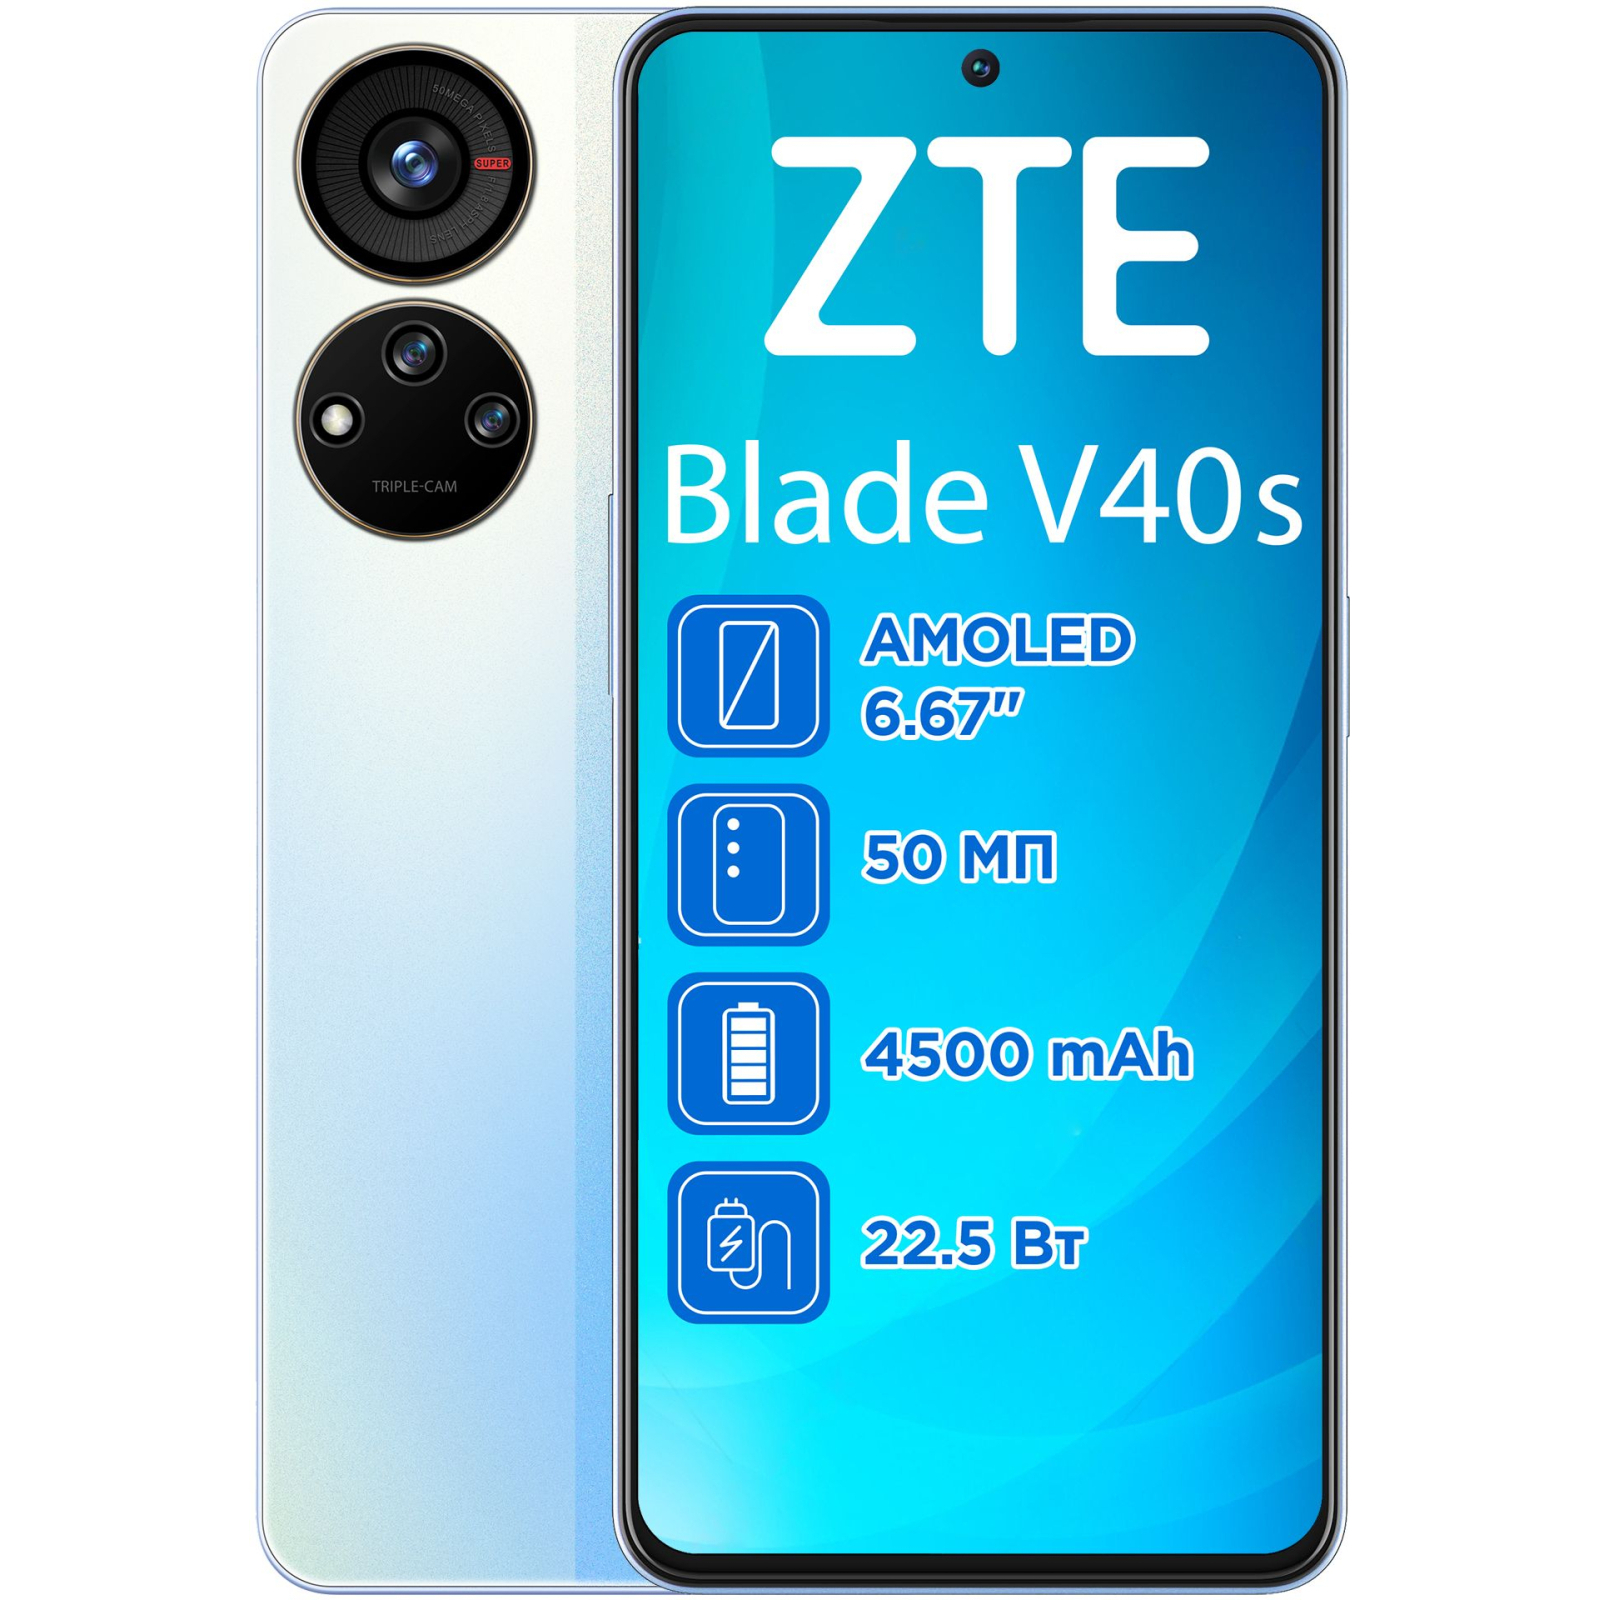 Мобильный телефон ZTE Blade V40S 6/128GB Black (993087)